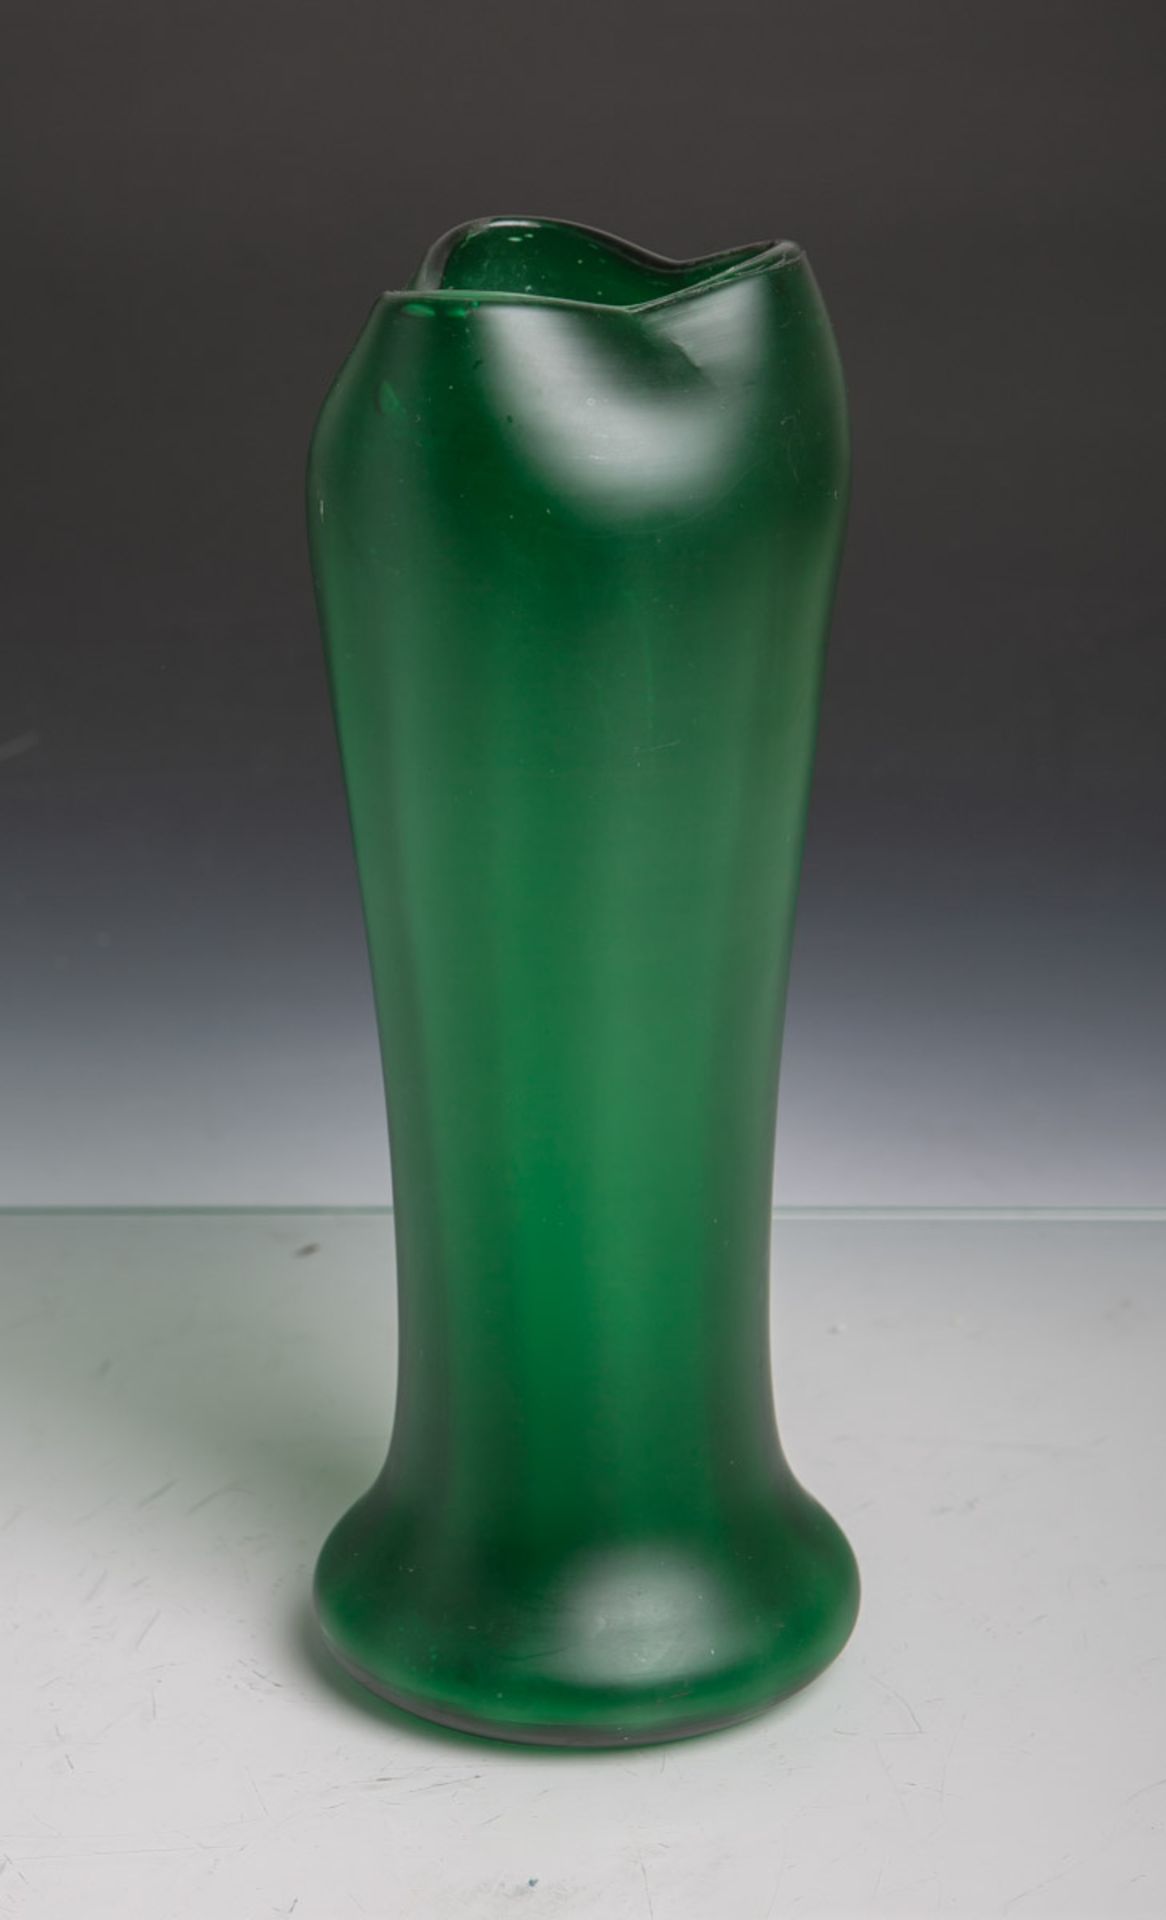 Jugendstil-Glasvase von Lötz (um 1900), in grün, mit dreifacher Mündung, H. ca. 27,5 cm.